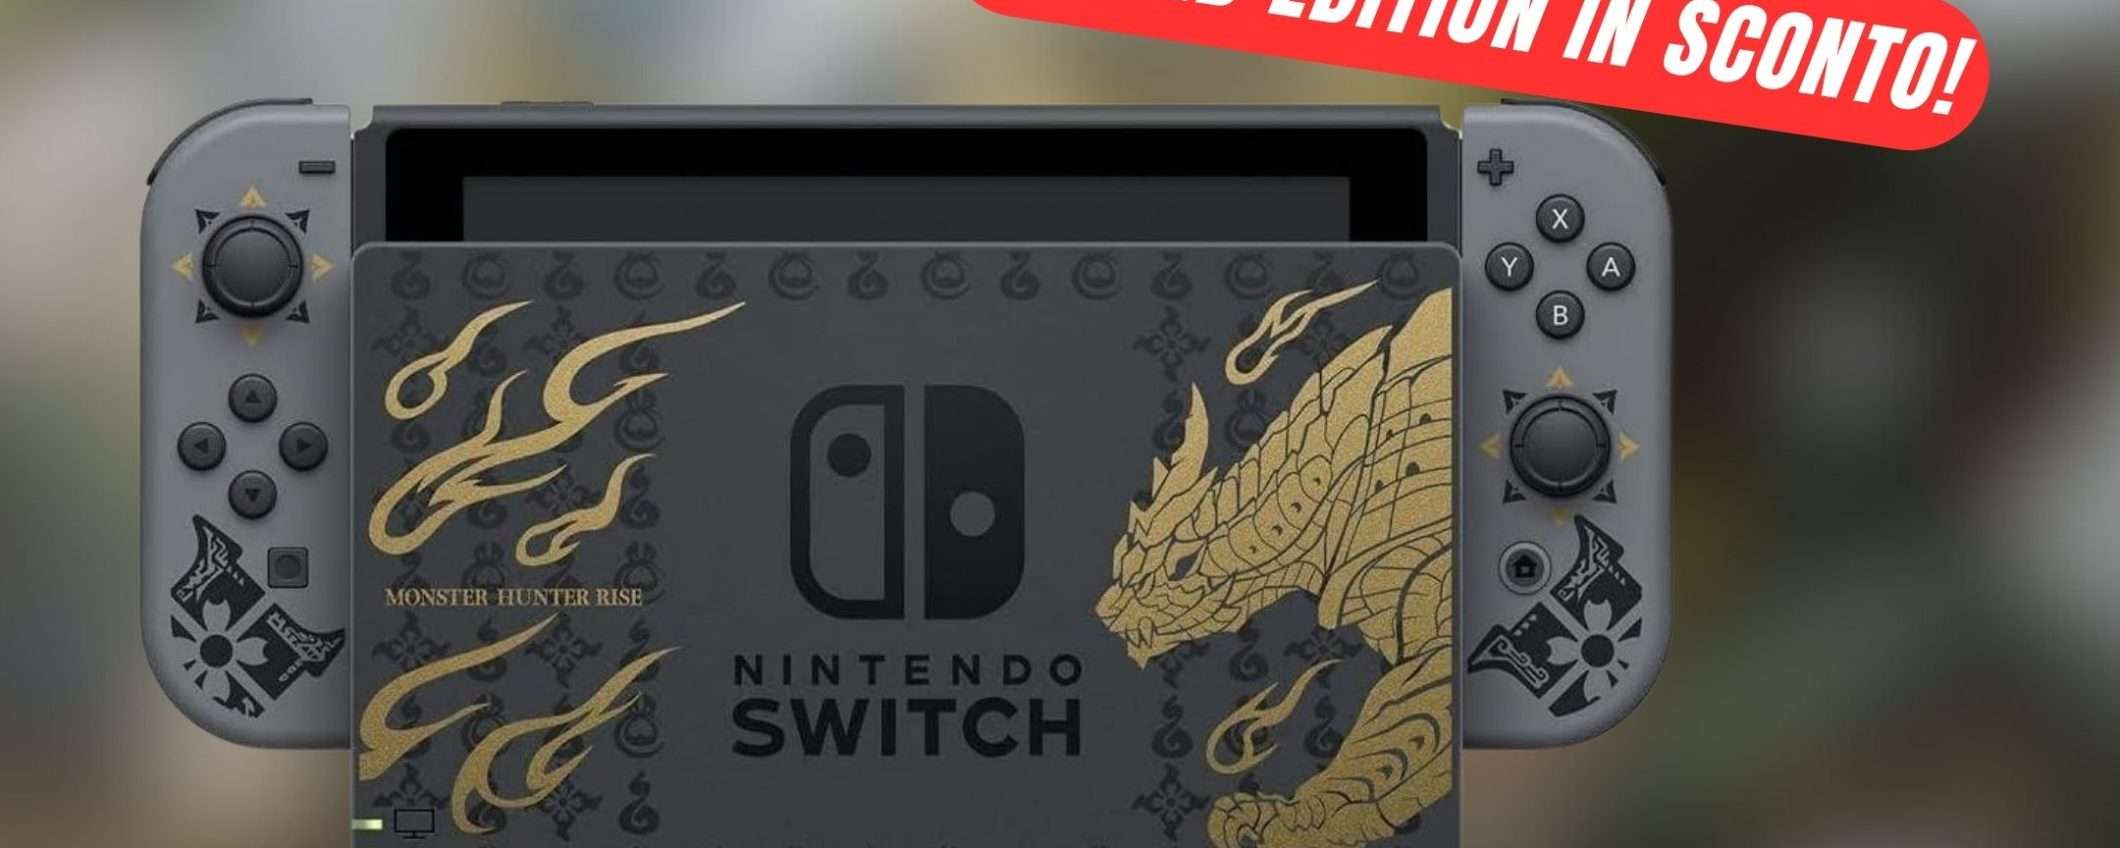 Nintendo Switch in EDIZIONE LIMITATA è in SCONTO!